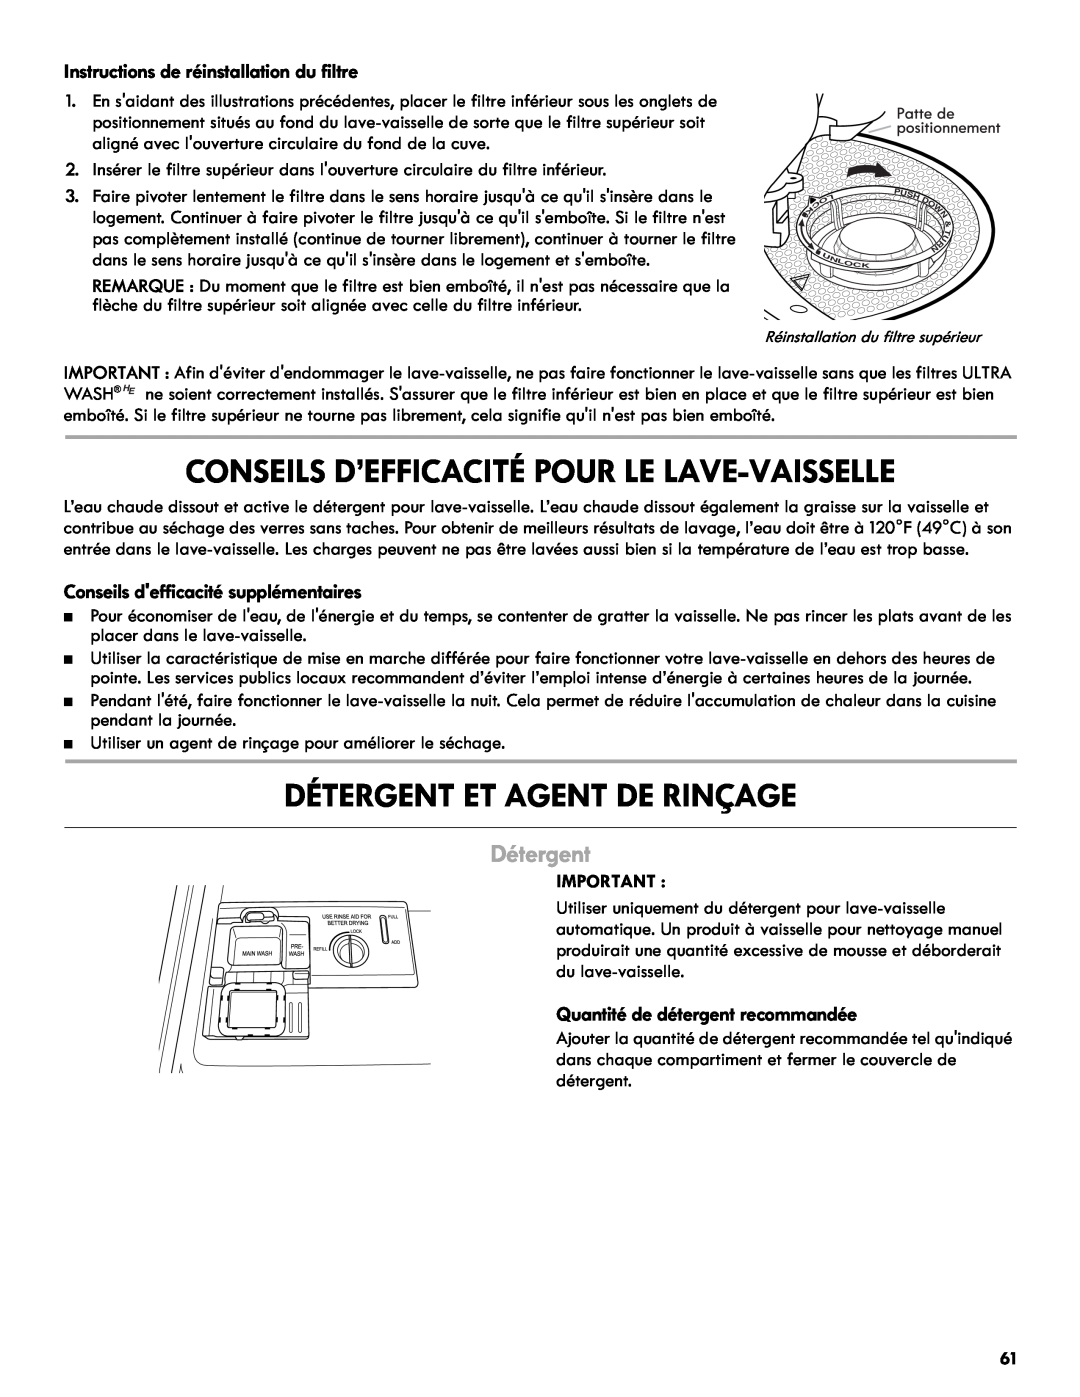 Kenmore 665.1327 manual Détergent Et Agent De Rinçage, Conseils D’Efficacité Pour Le Lave-Vaisselle 